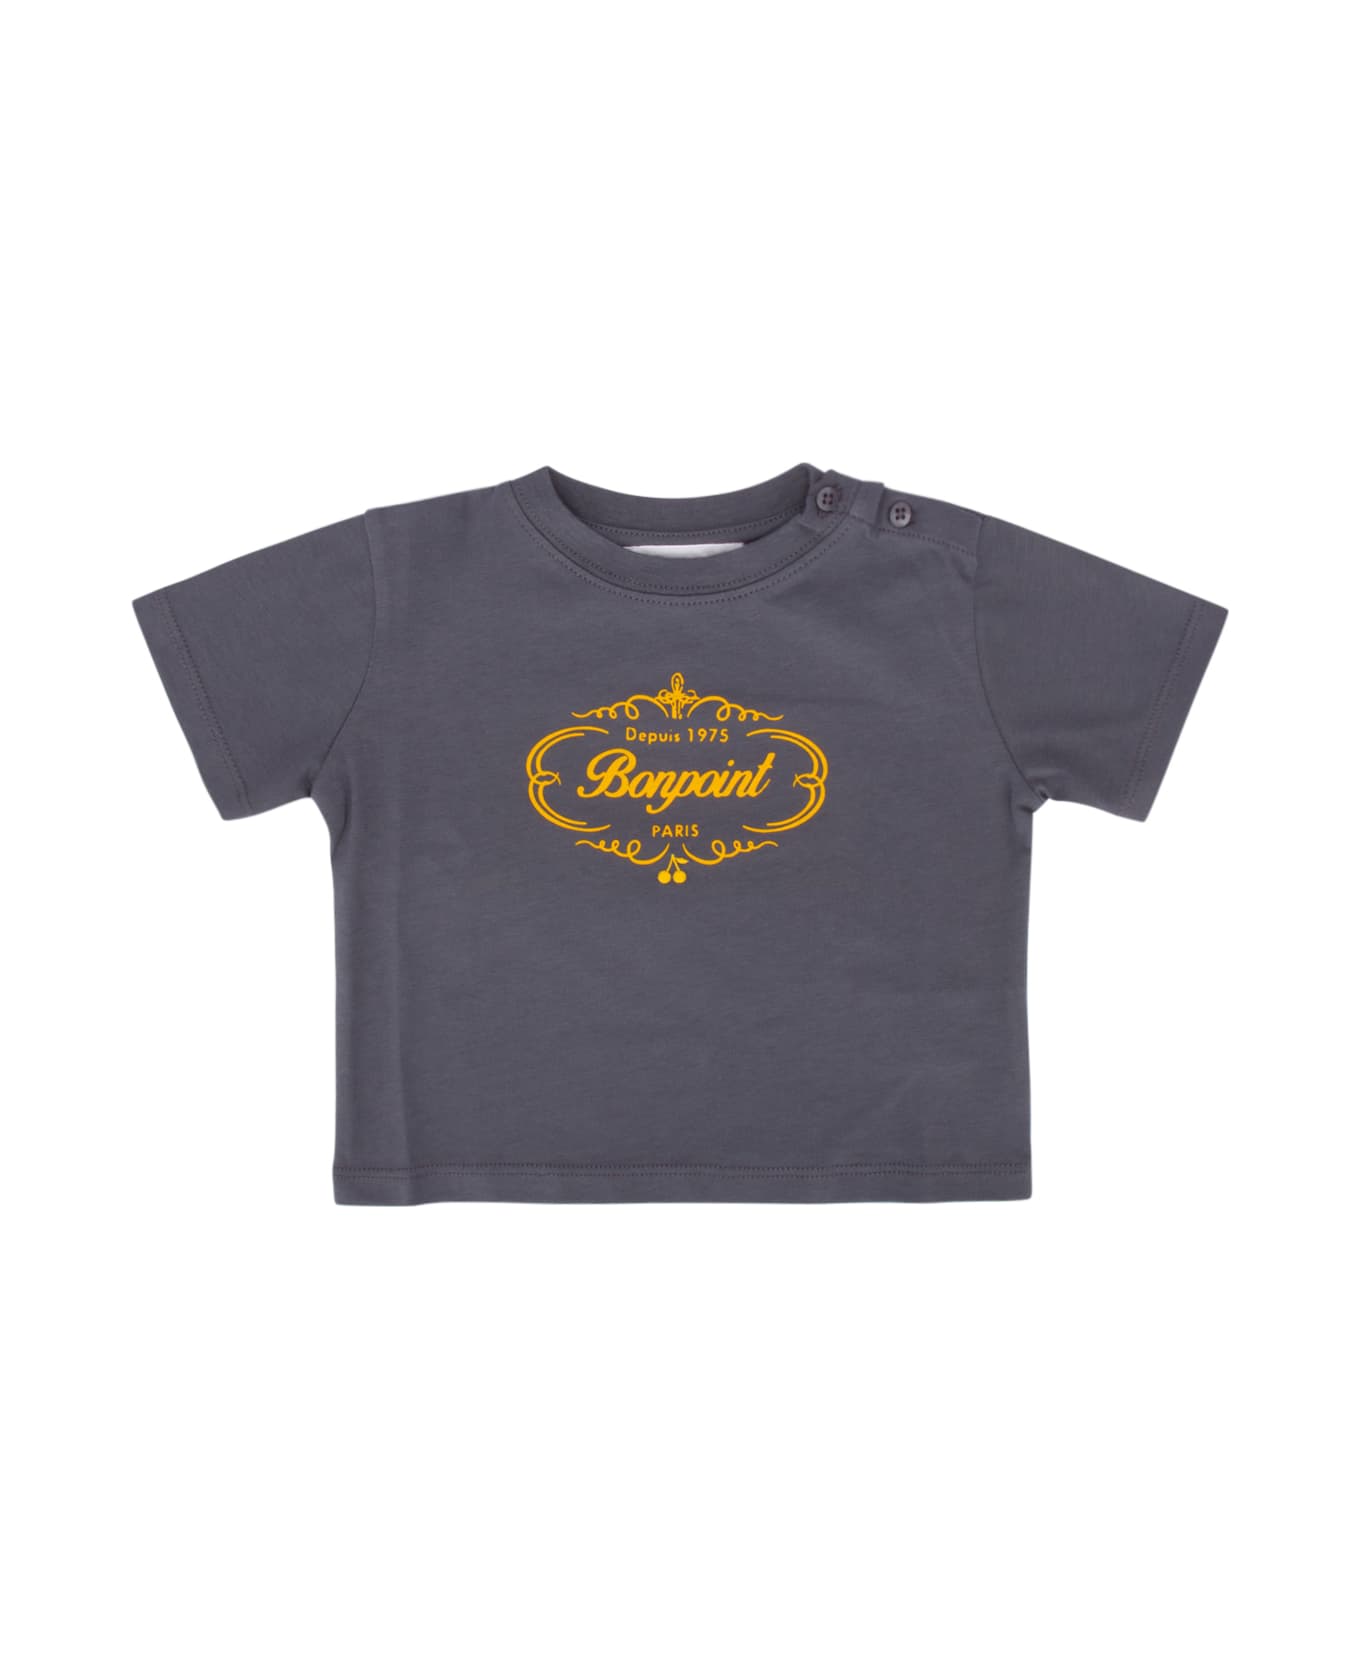 Bonpoint T-shirt - UPBBLEUGRIS